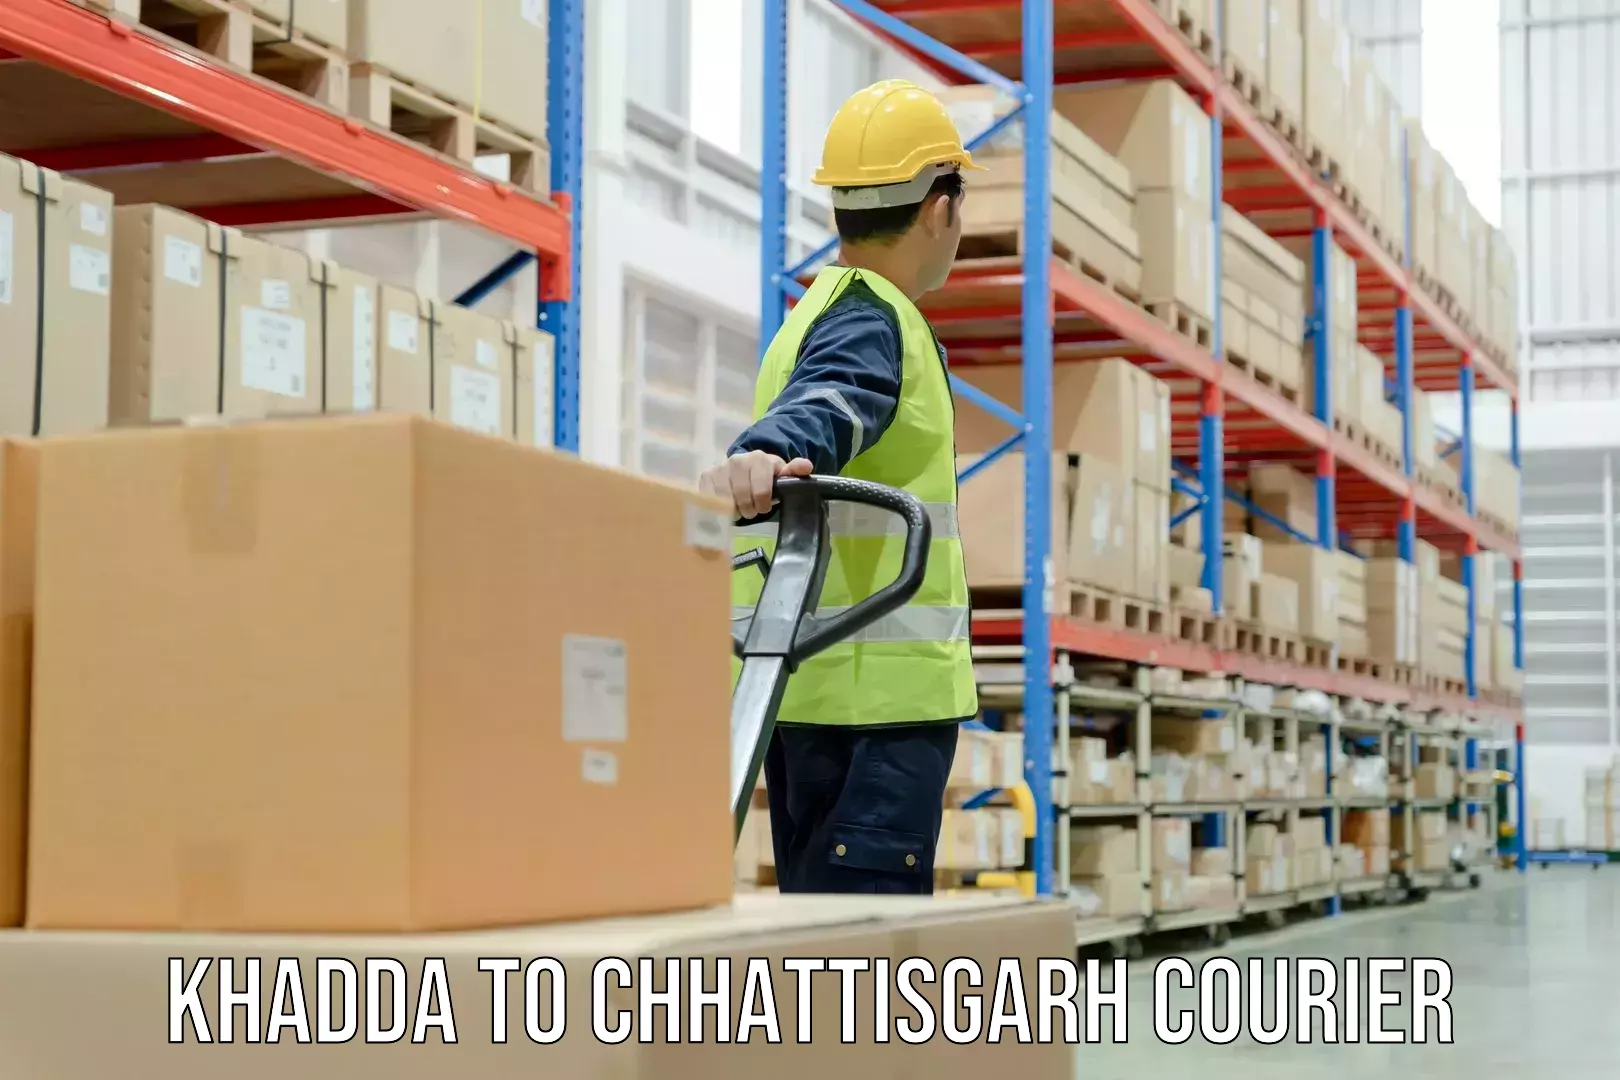 Global shipping solutions Khadda to Bastar